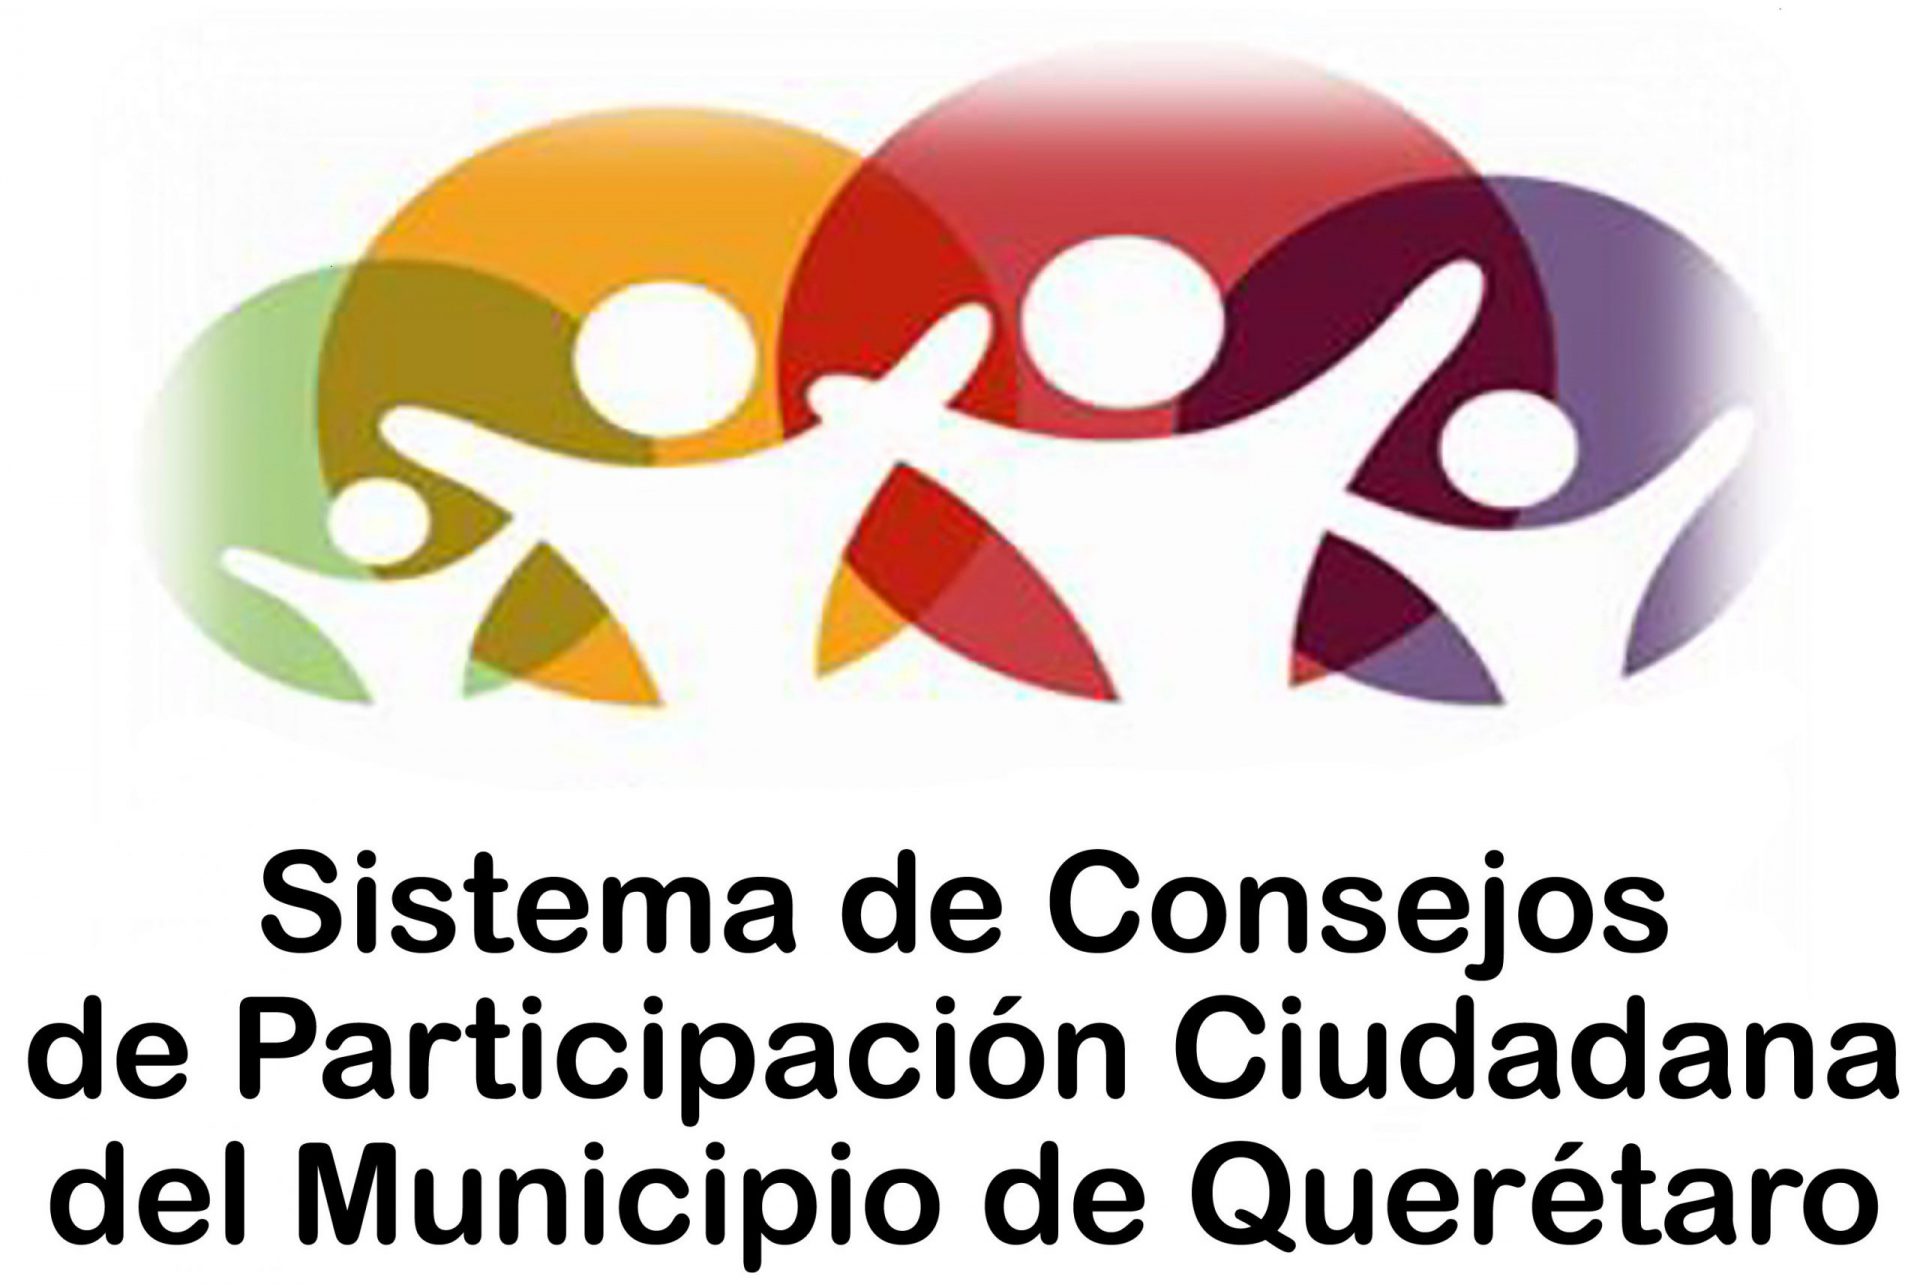 Sistema de Consejos de Participación Ciudadana del Municipio de Querétaro